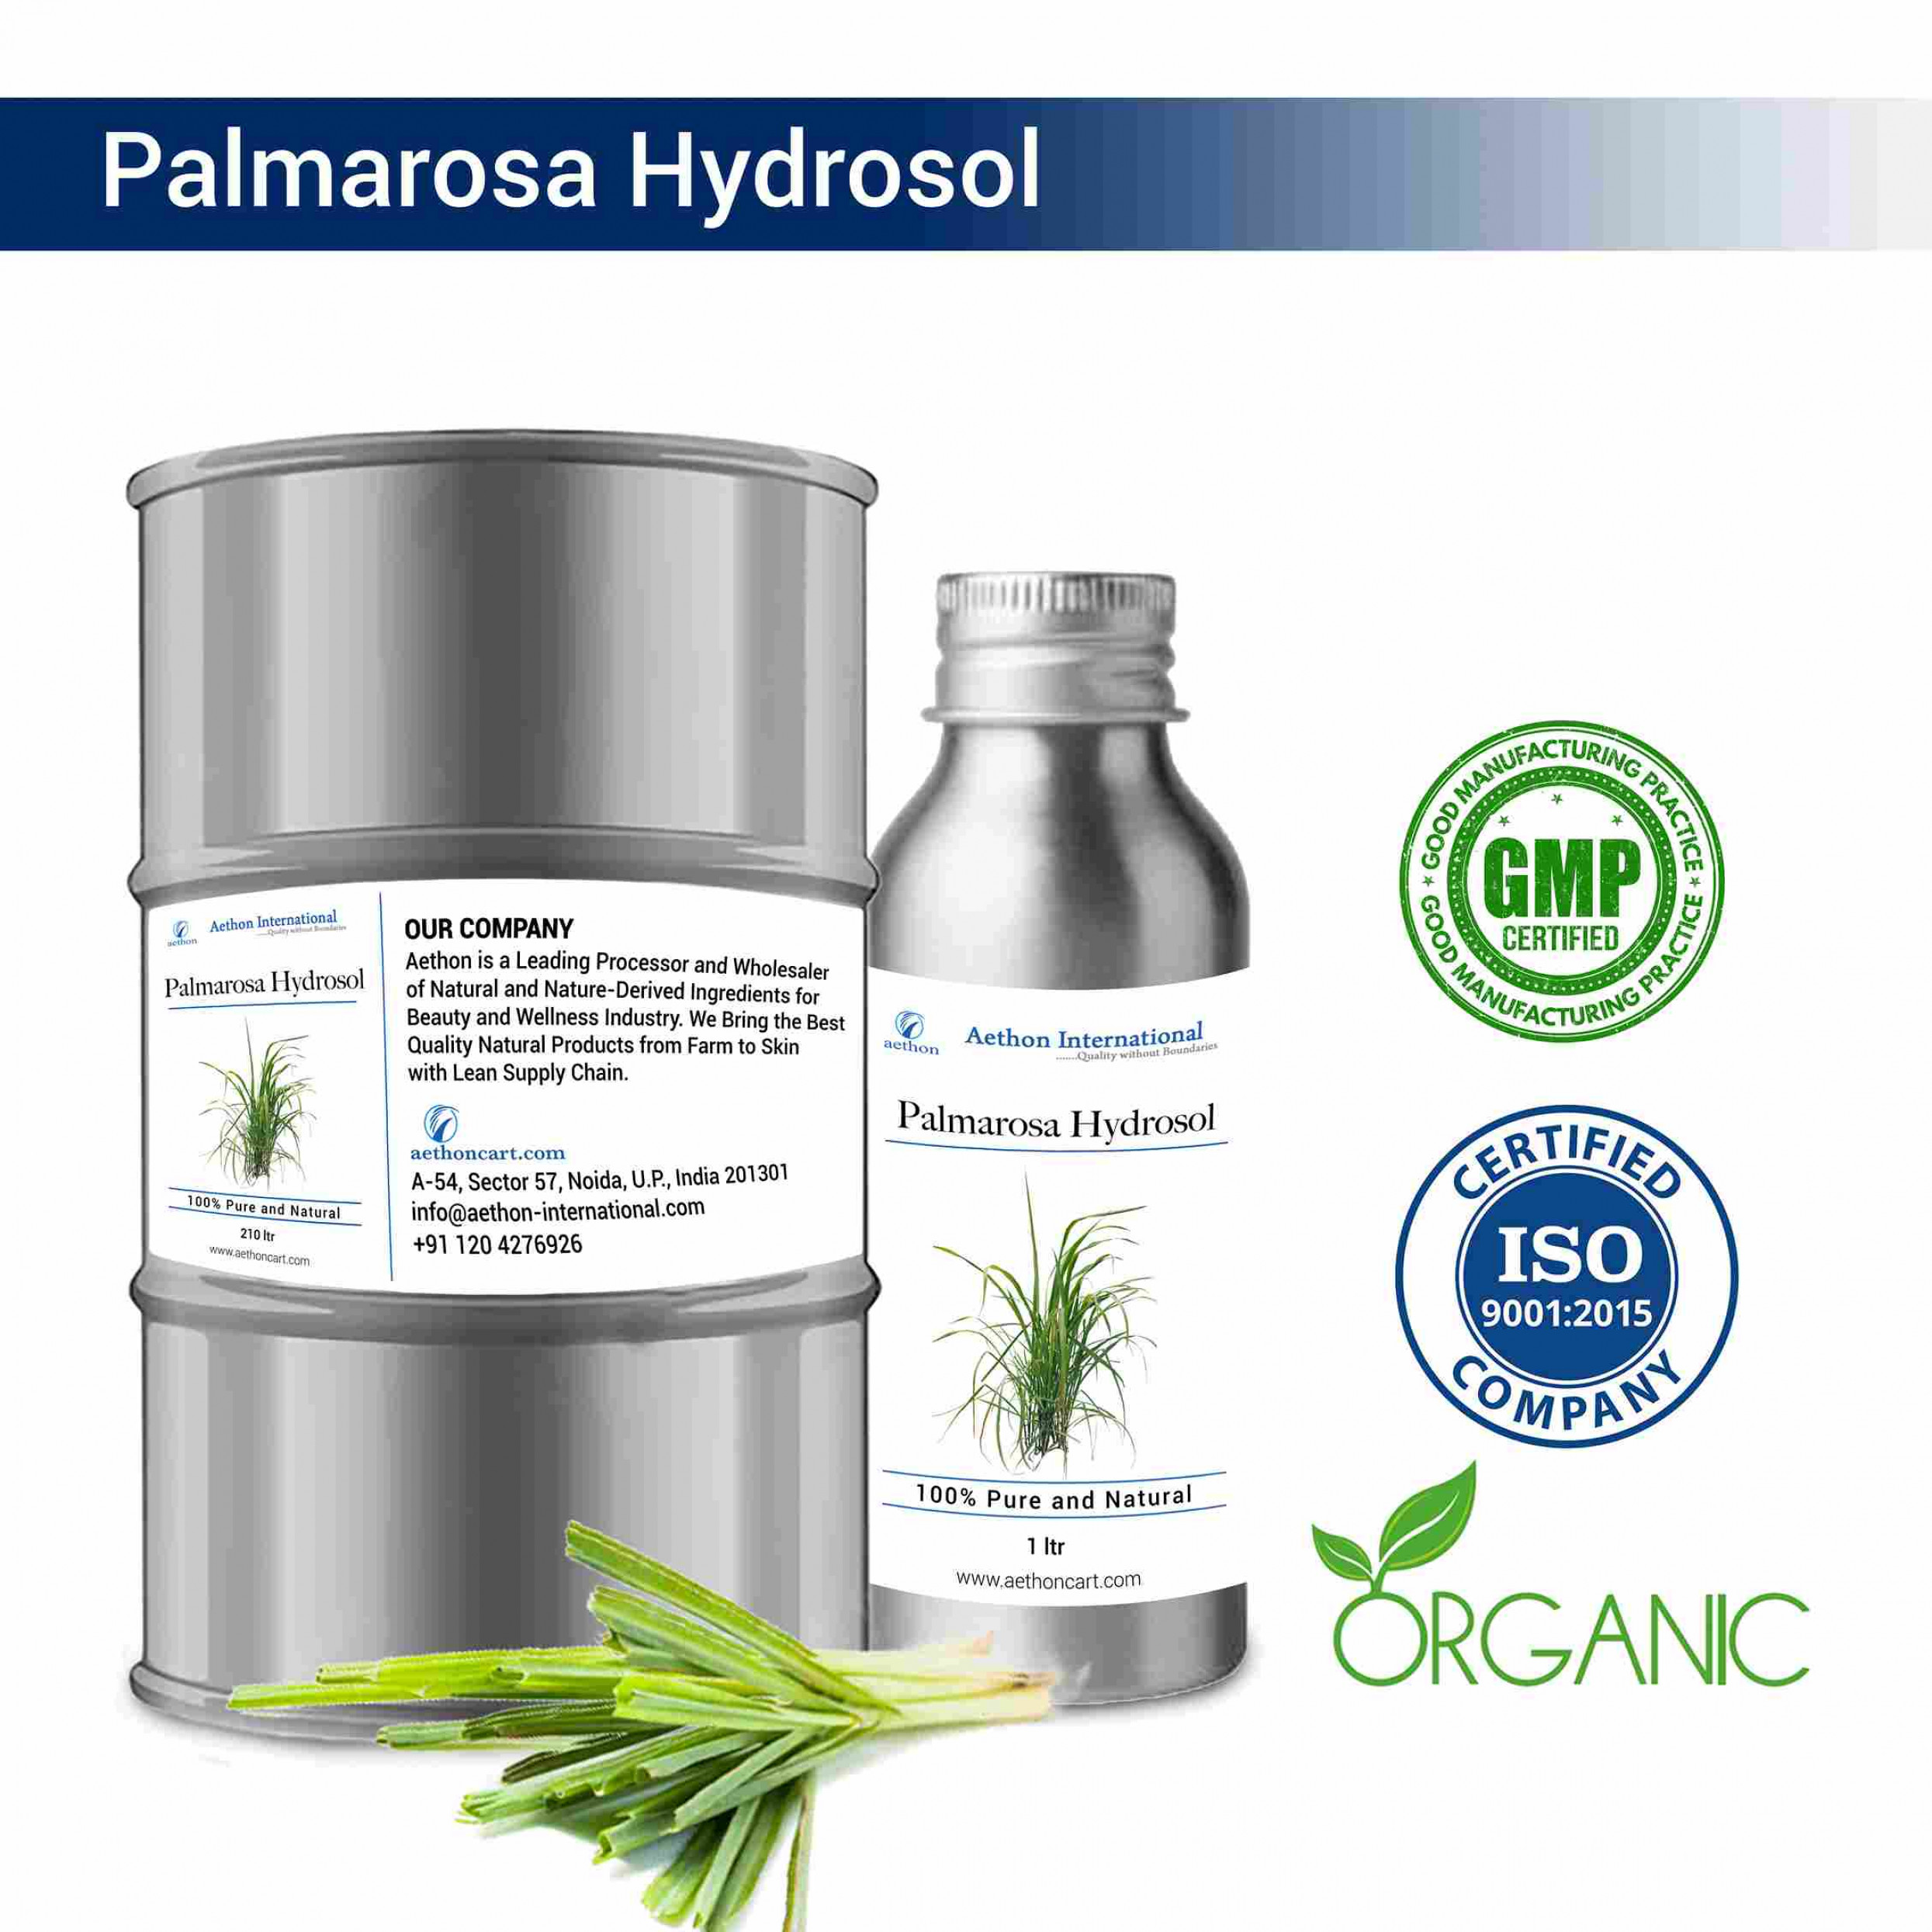 Palmarosa Hydrosol